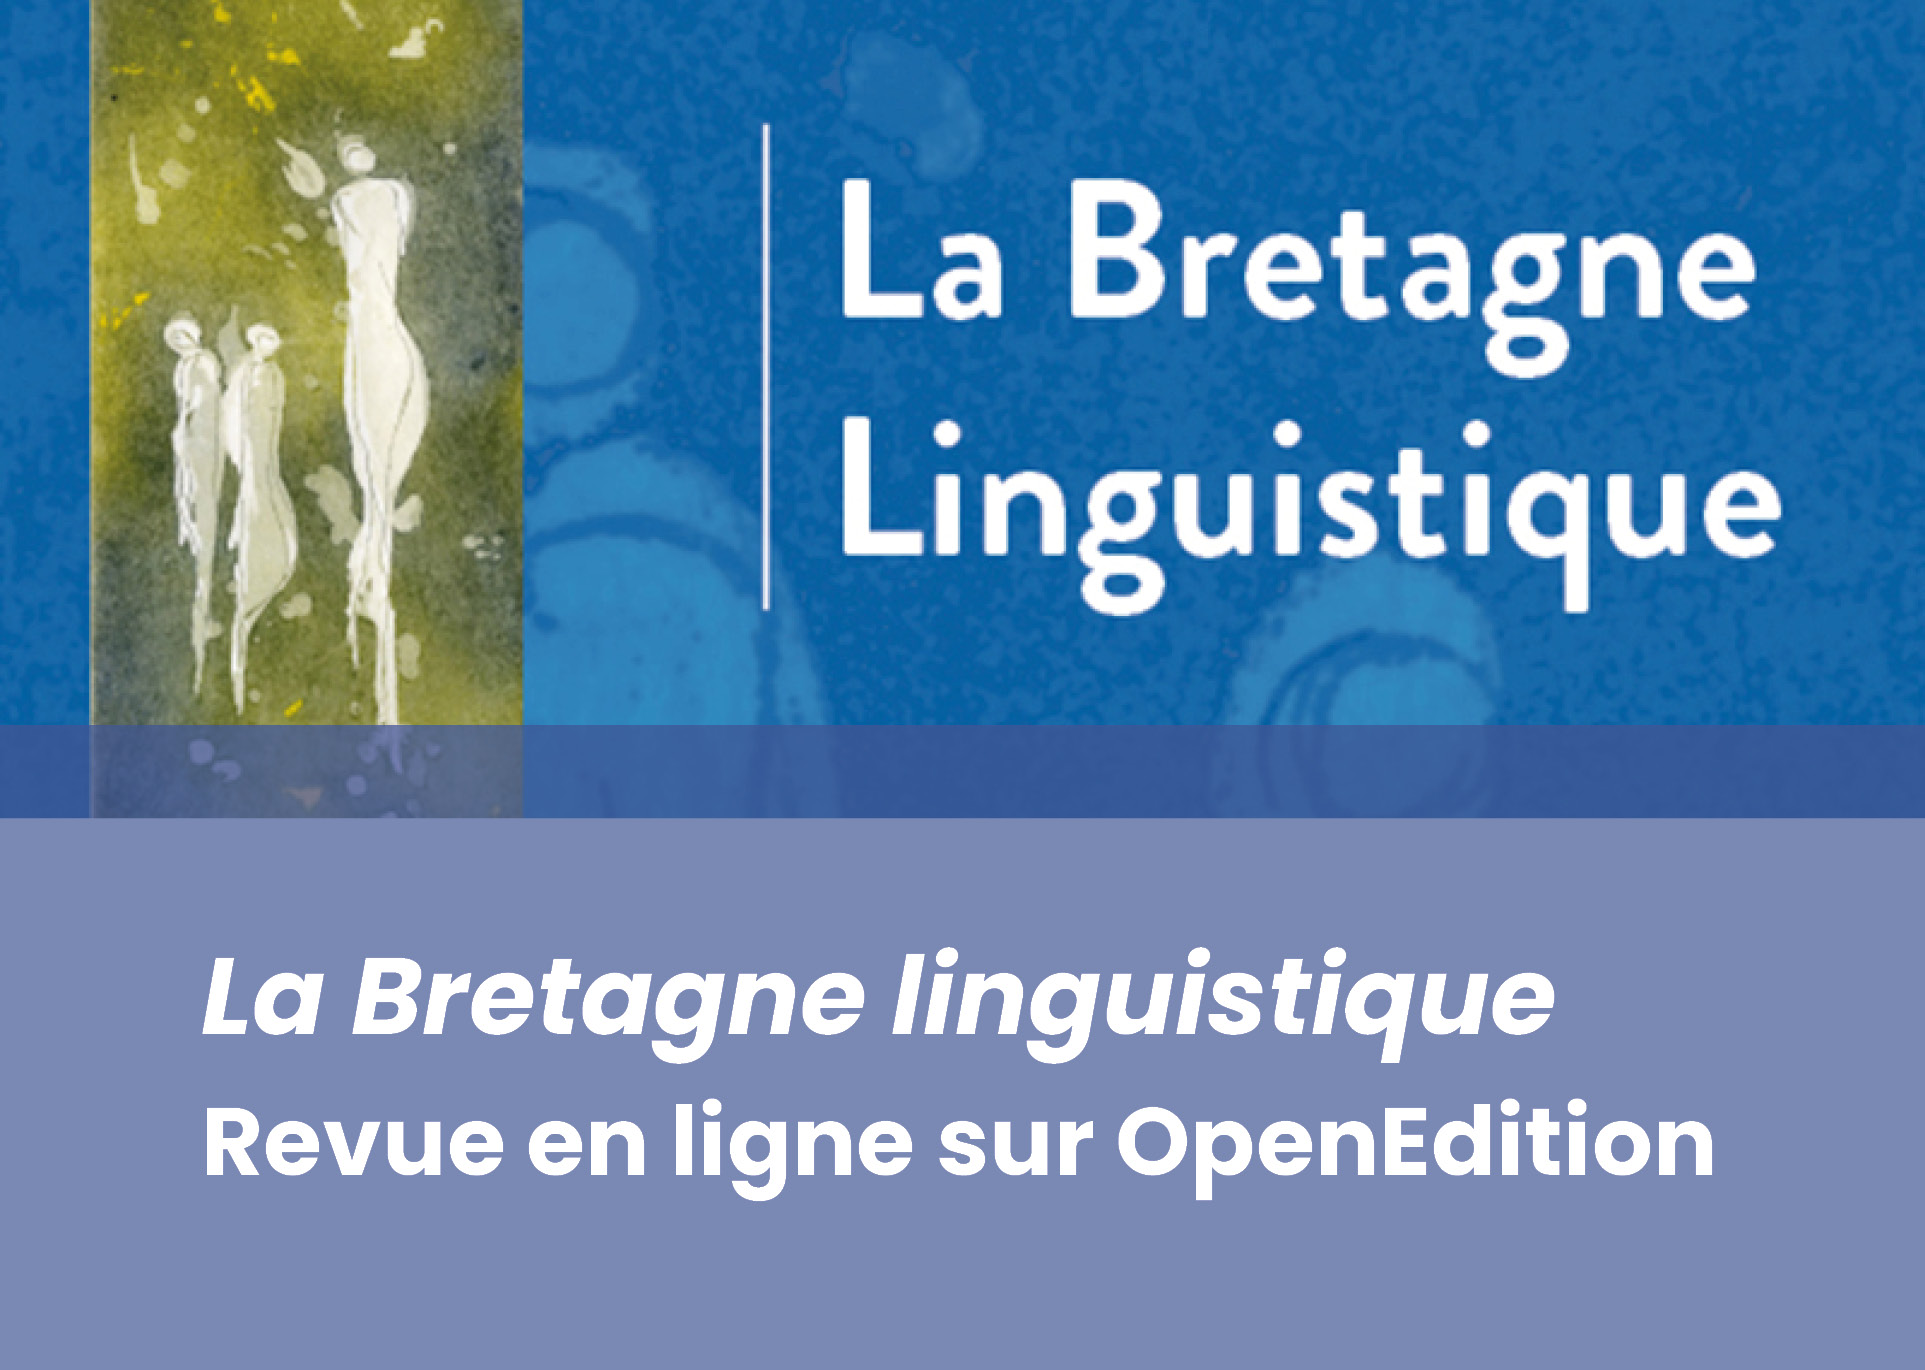 La Bretagne linguistique